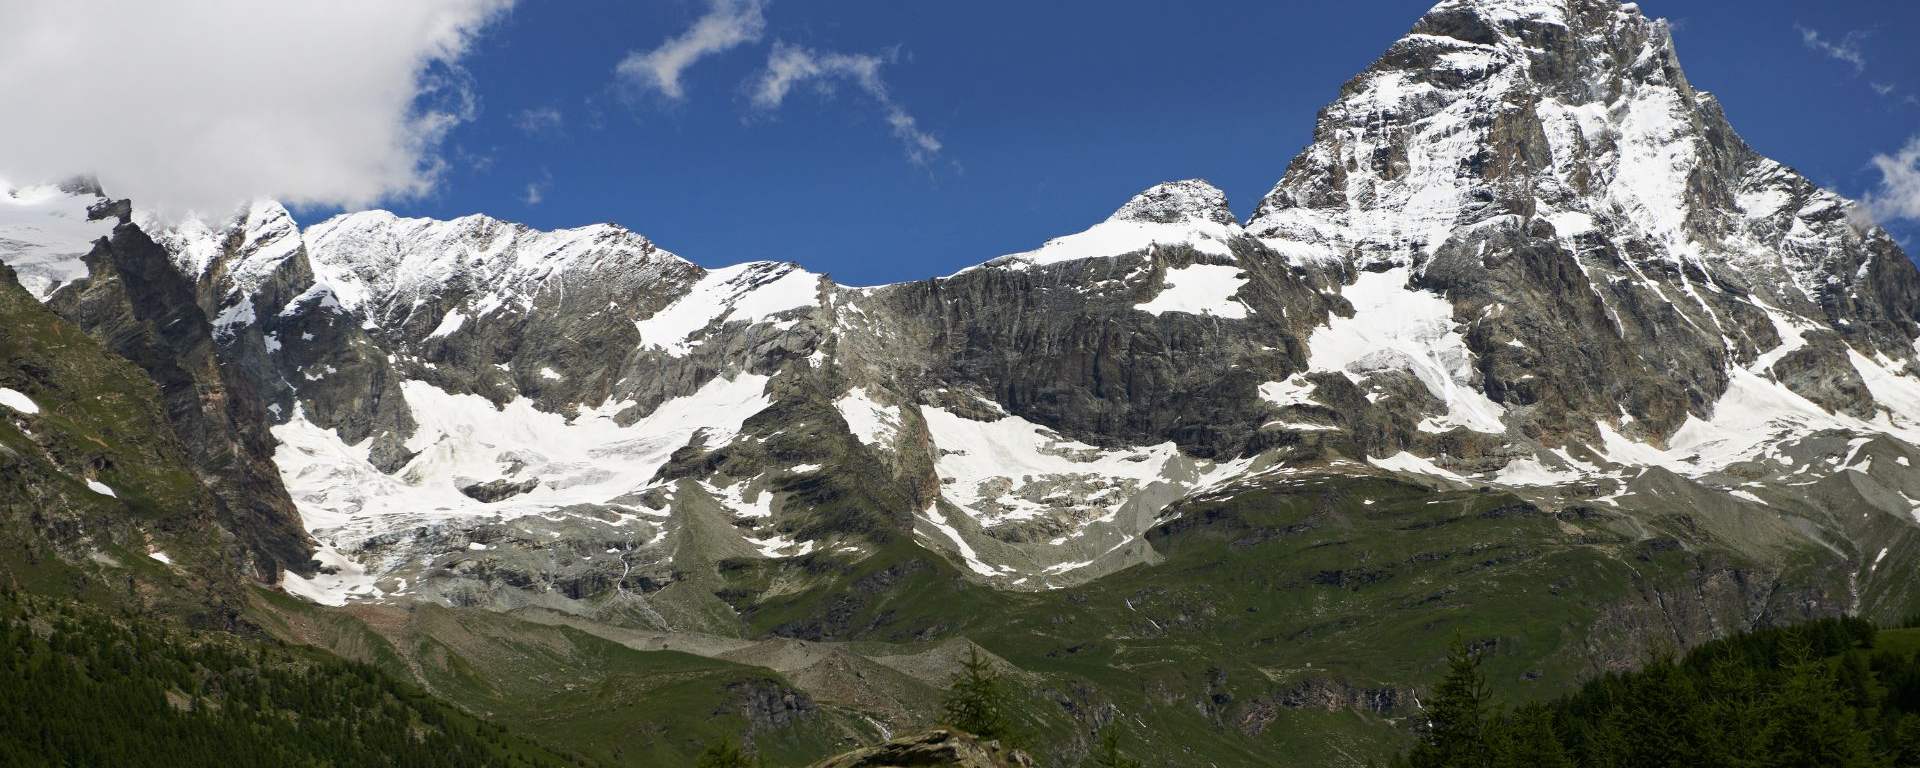 Matterhorn od strony włoskiej